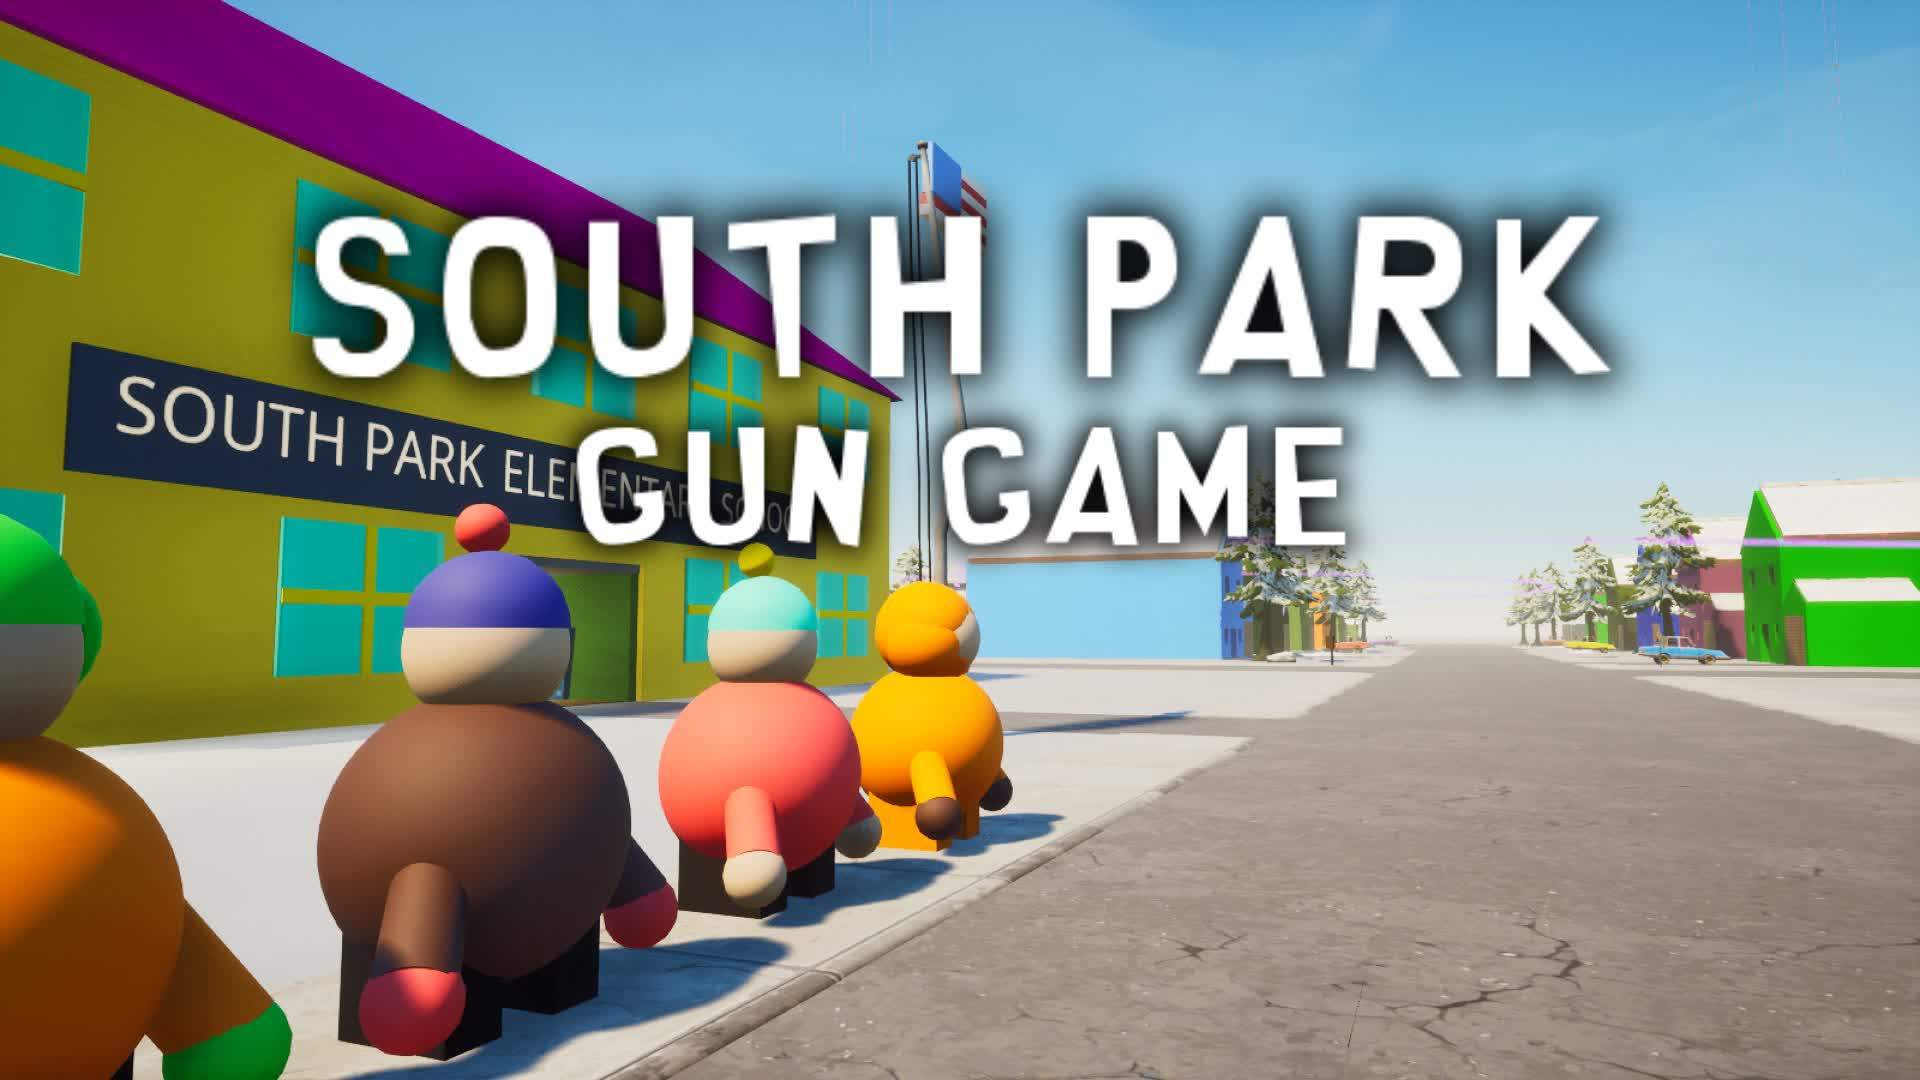 SOUTH PARK GUN GAME